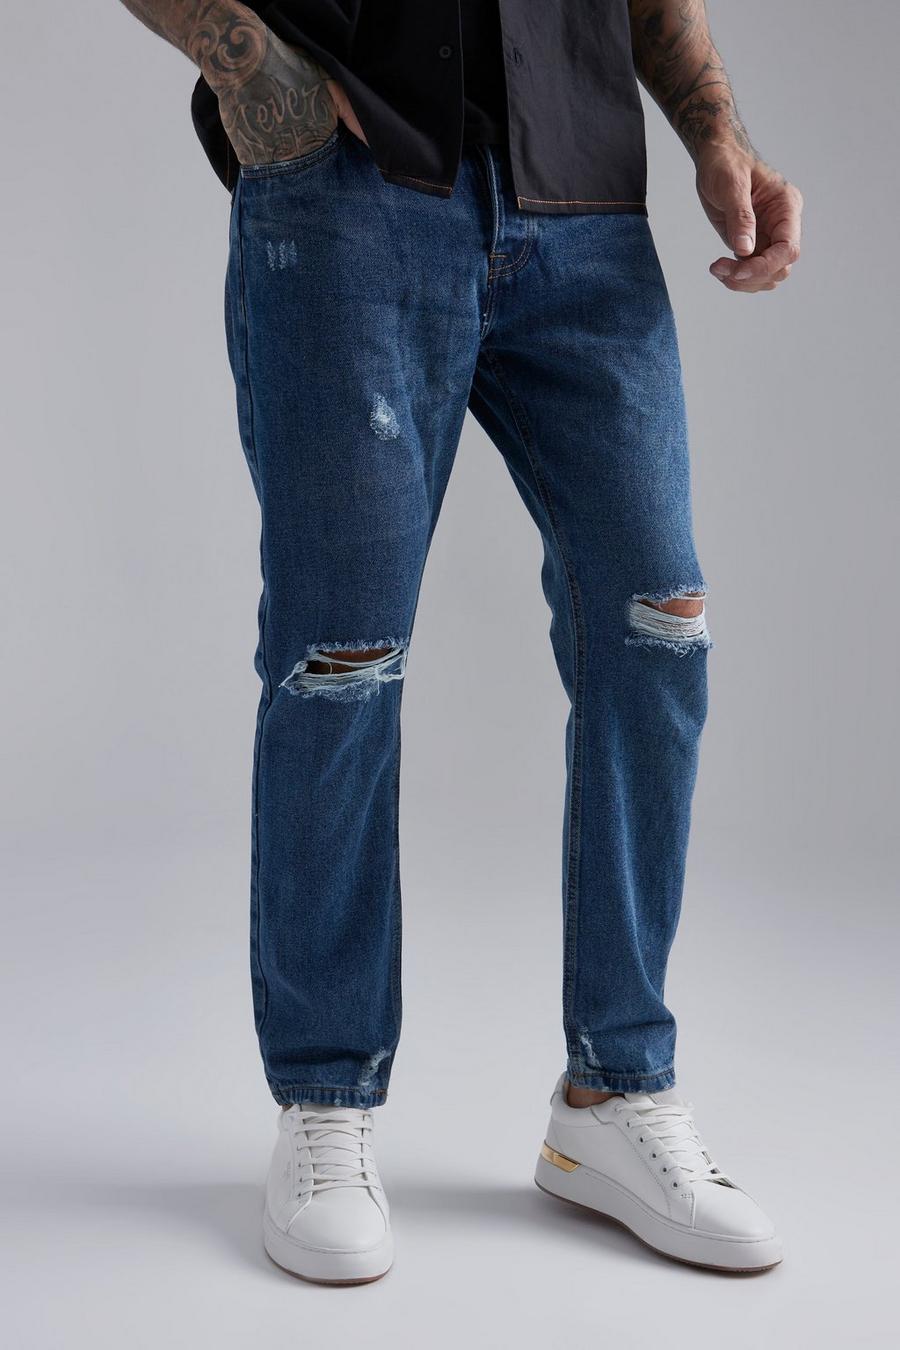 כחול azzurro ג'ינס בגזרה רפויה עם קרעים בברך